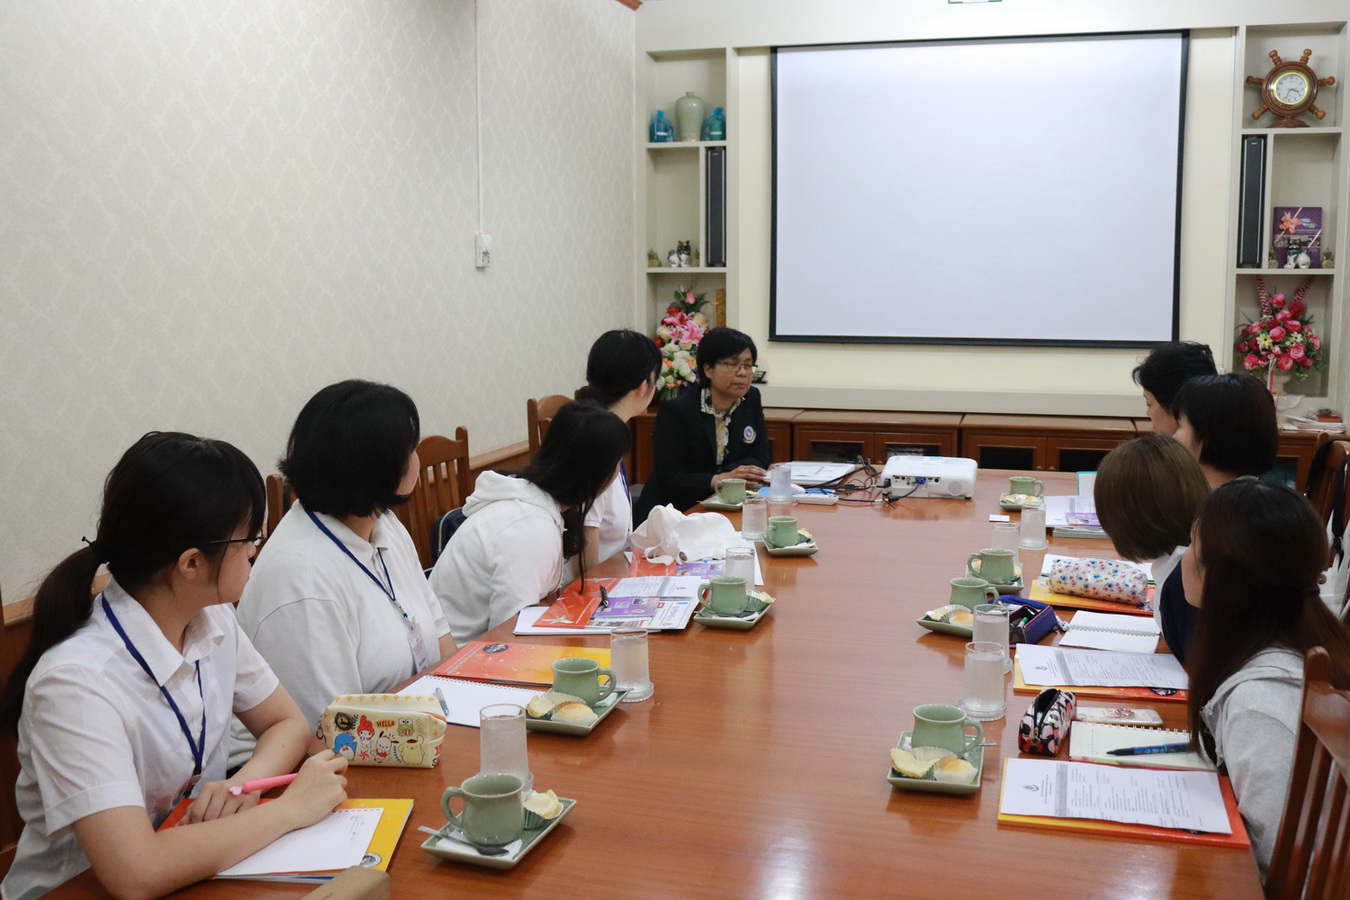 
	ต้อนรับอาจารย์และนักศึกษา School of Health Sciences, Faculty of Medicine University of the Ryukyus ประเทศญี่ปุ่น
